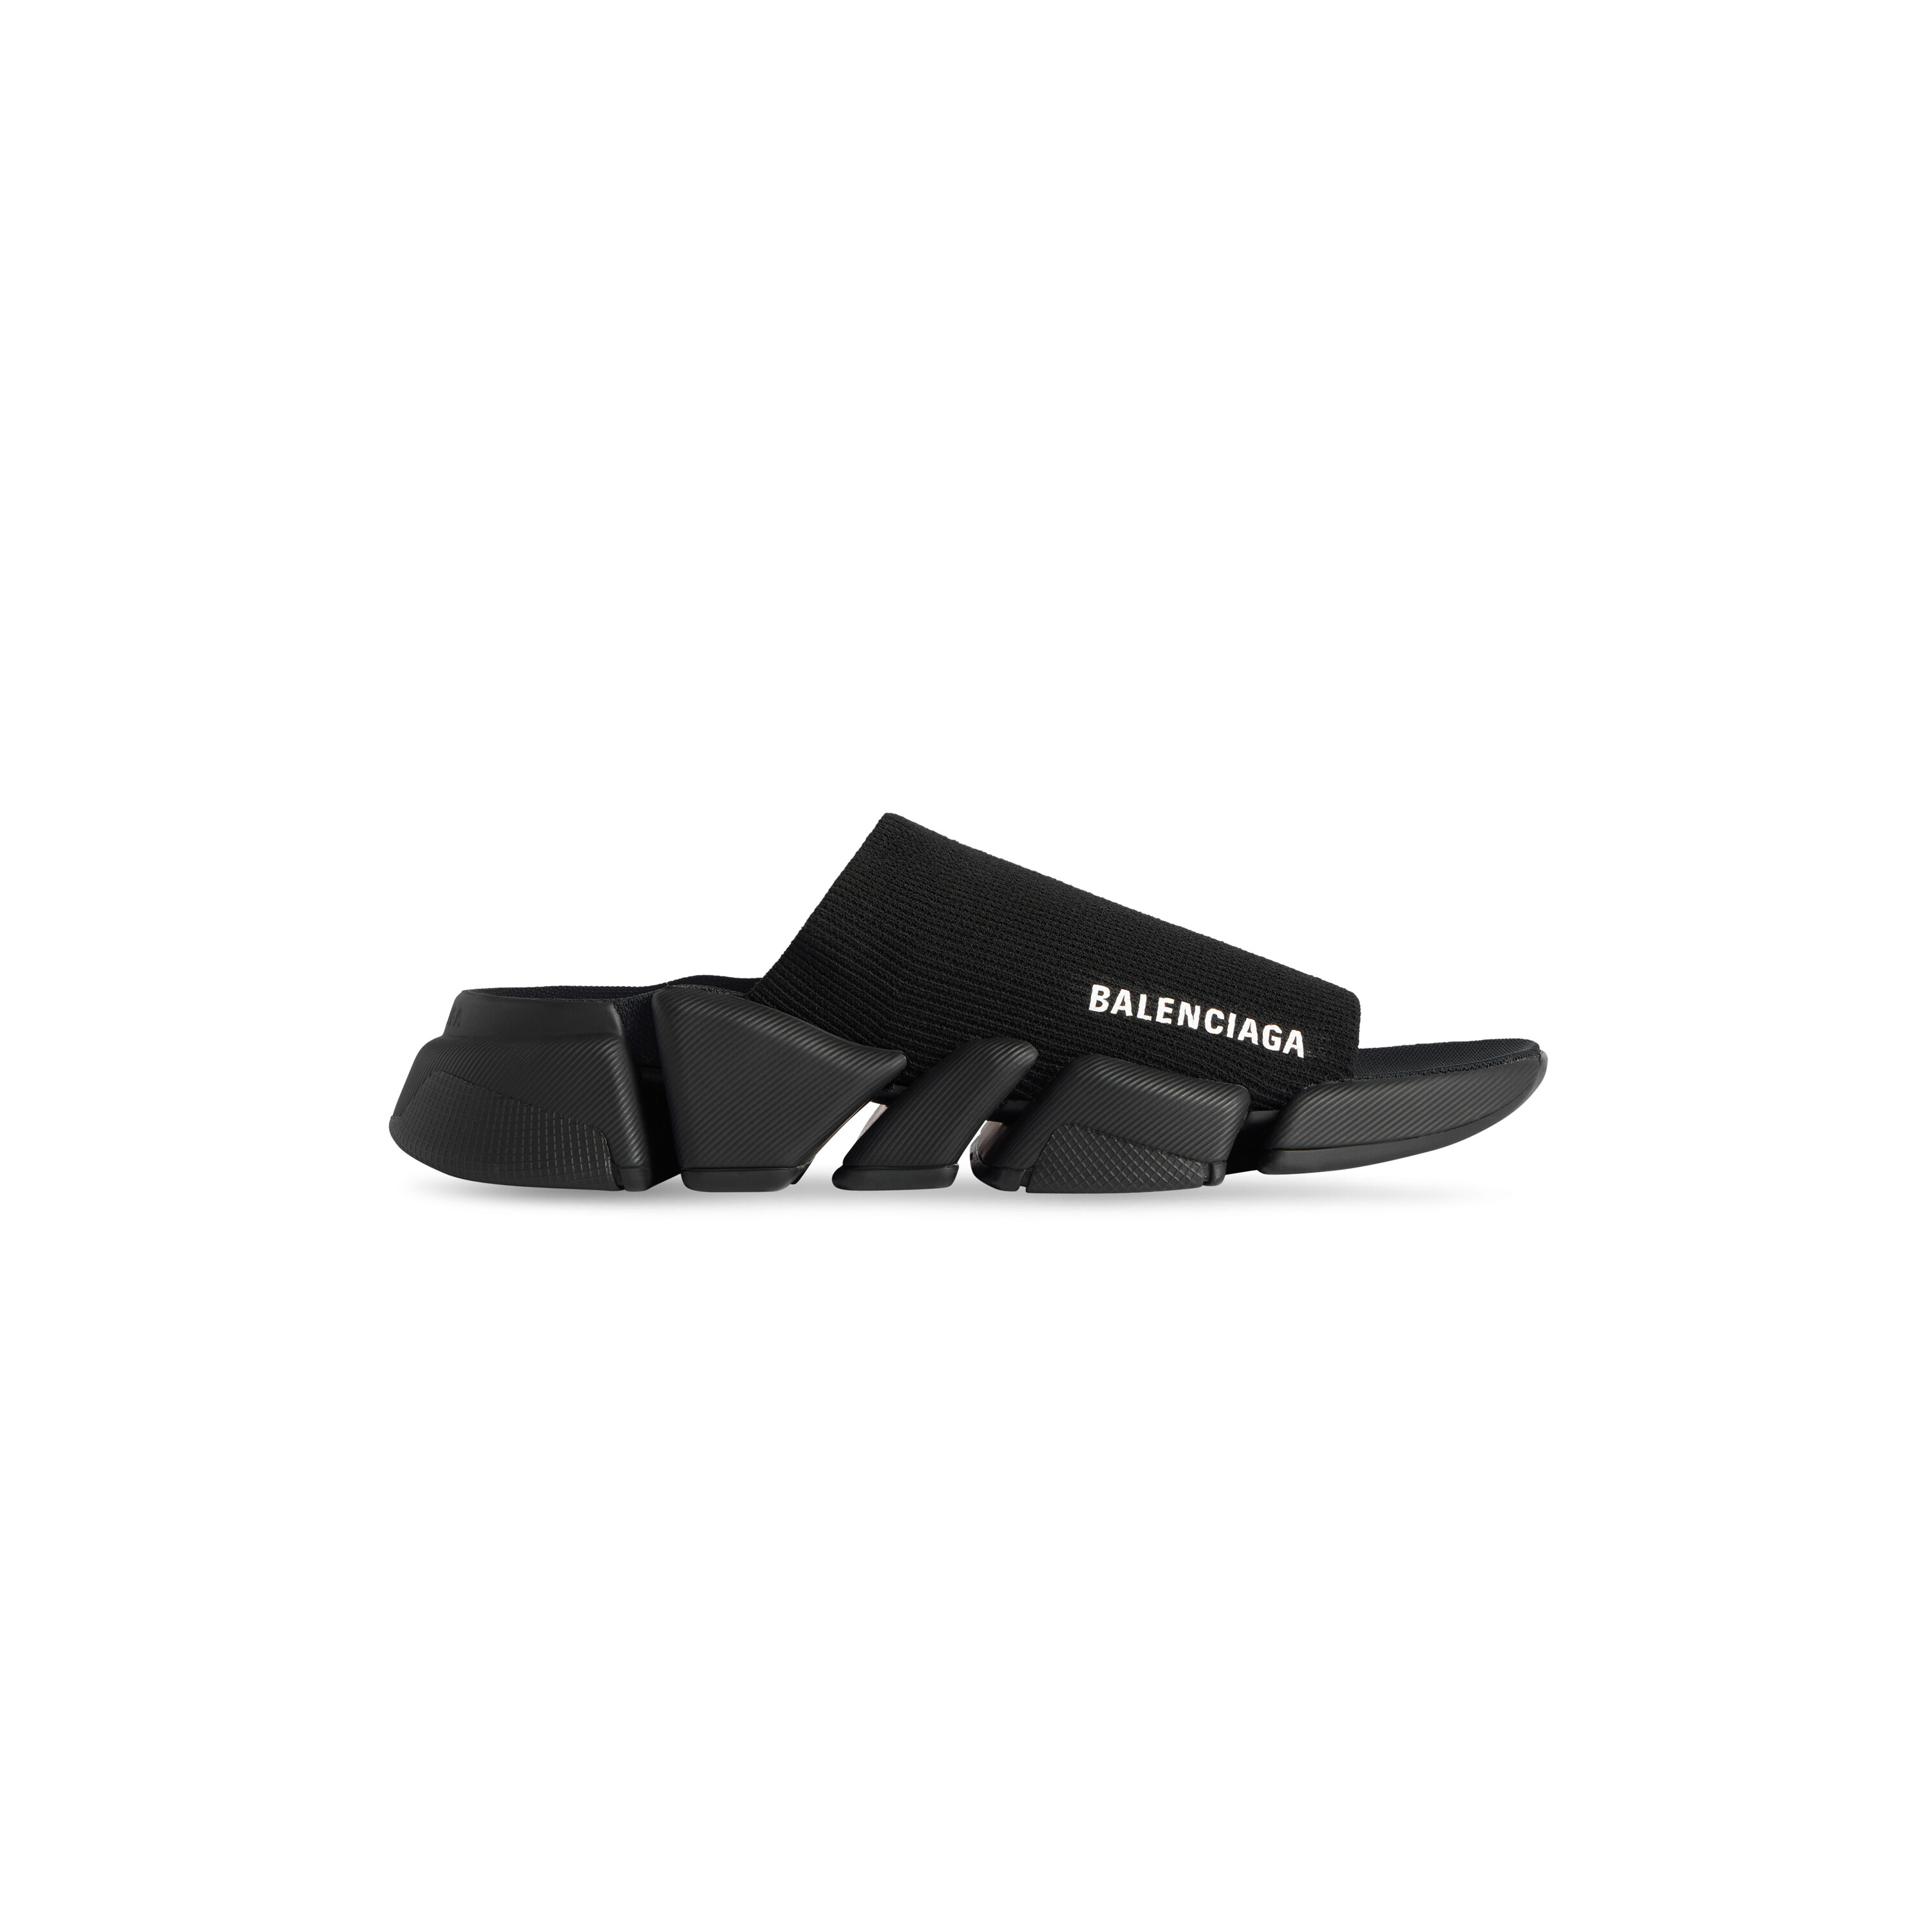 New Balenciaga BB Logo Pool Slides Sandals White Black Mens 9 42  eBay